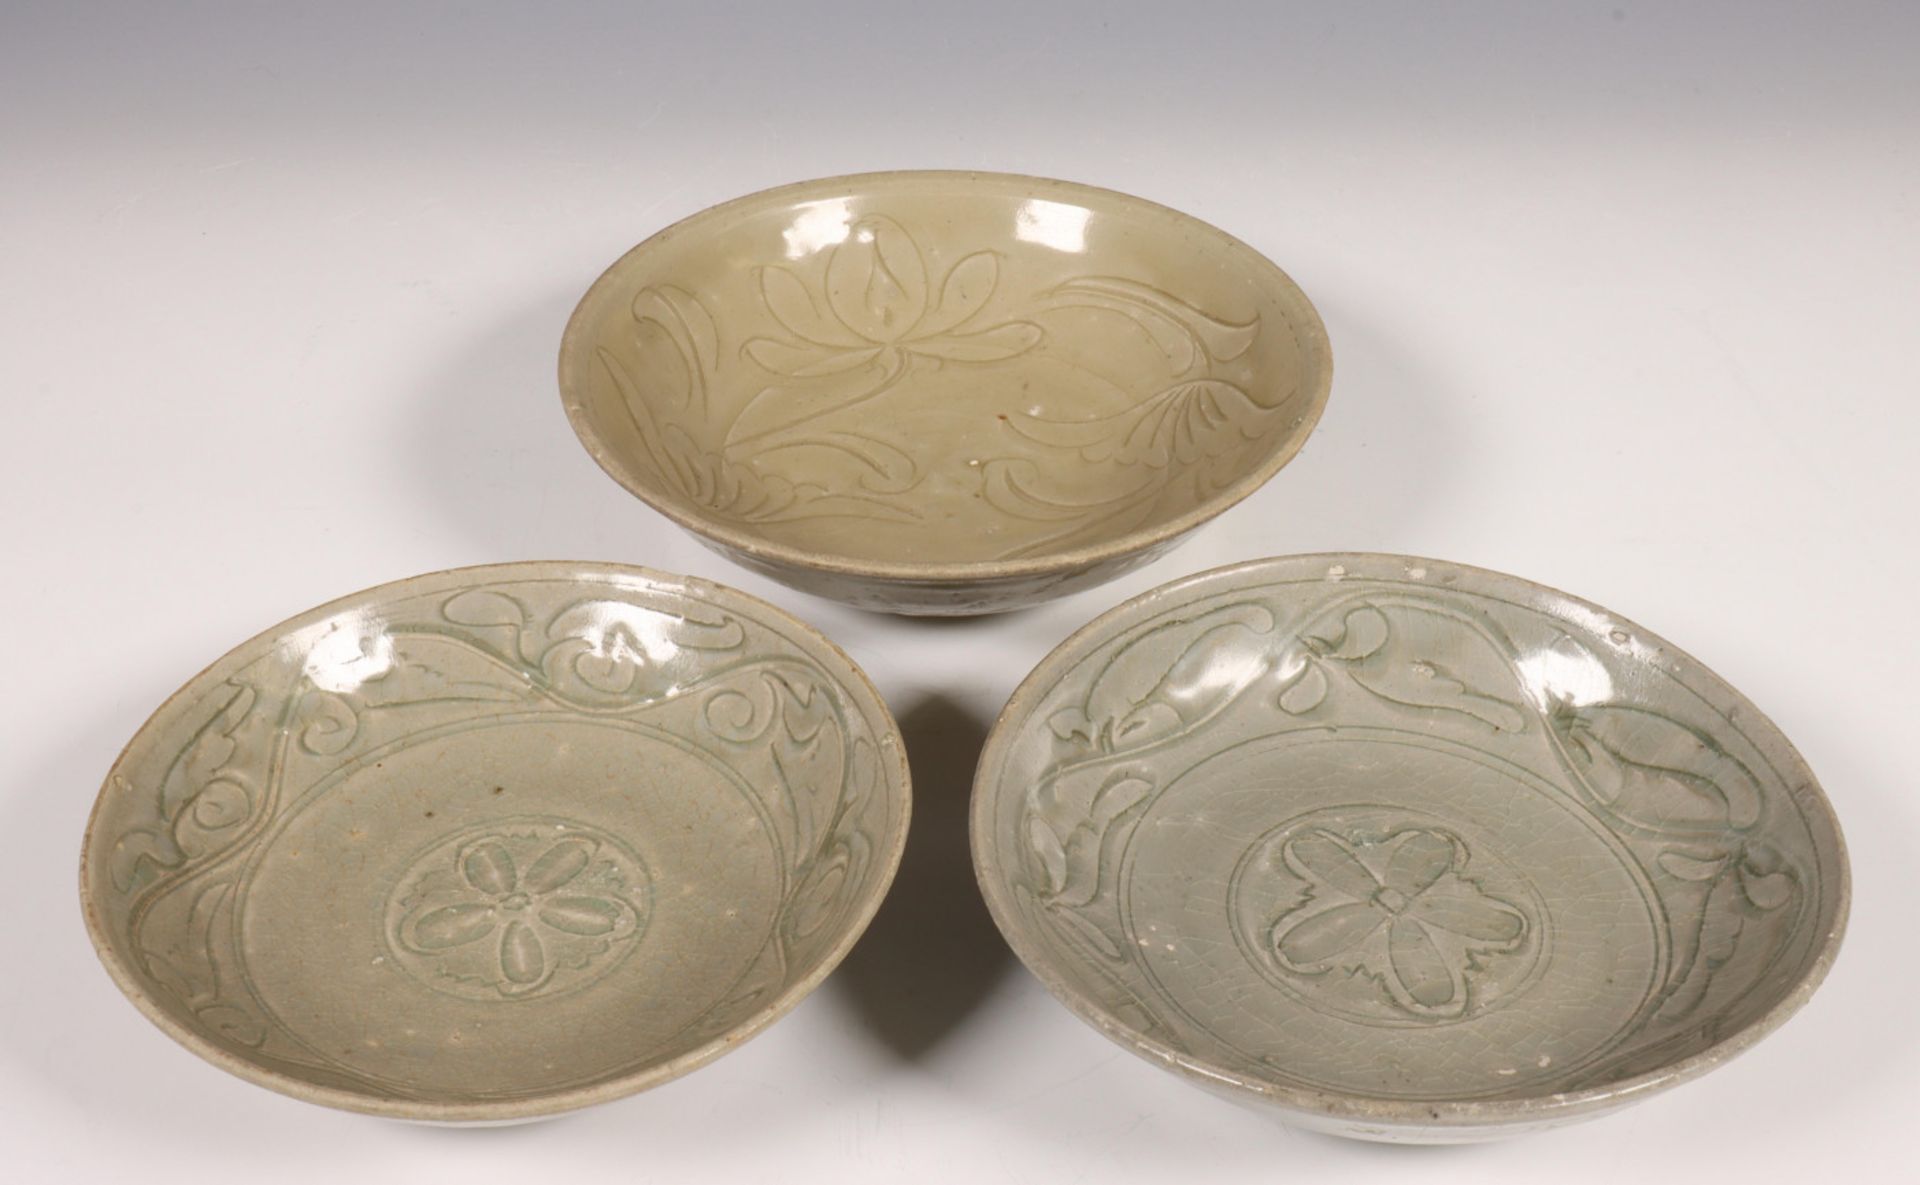 China, drie celadon porseleinen schoteltjes, Noordelijke Song dynastie, 10e-12e eeuw,